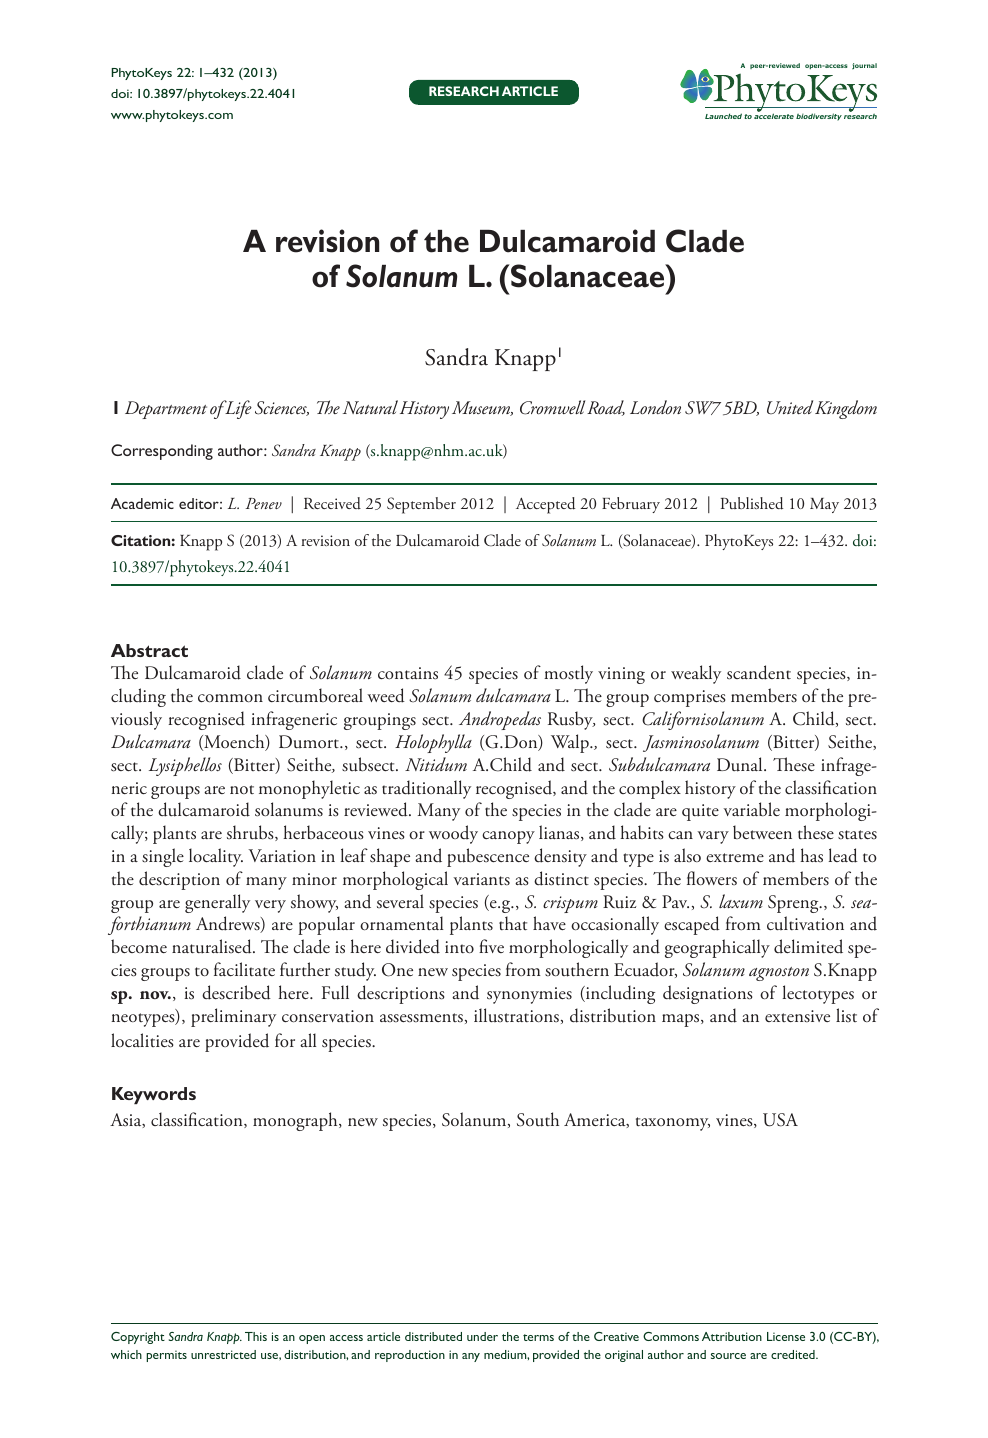 A Revision Of The Dulcamaroid Clade Of Solanum L Solanaceae